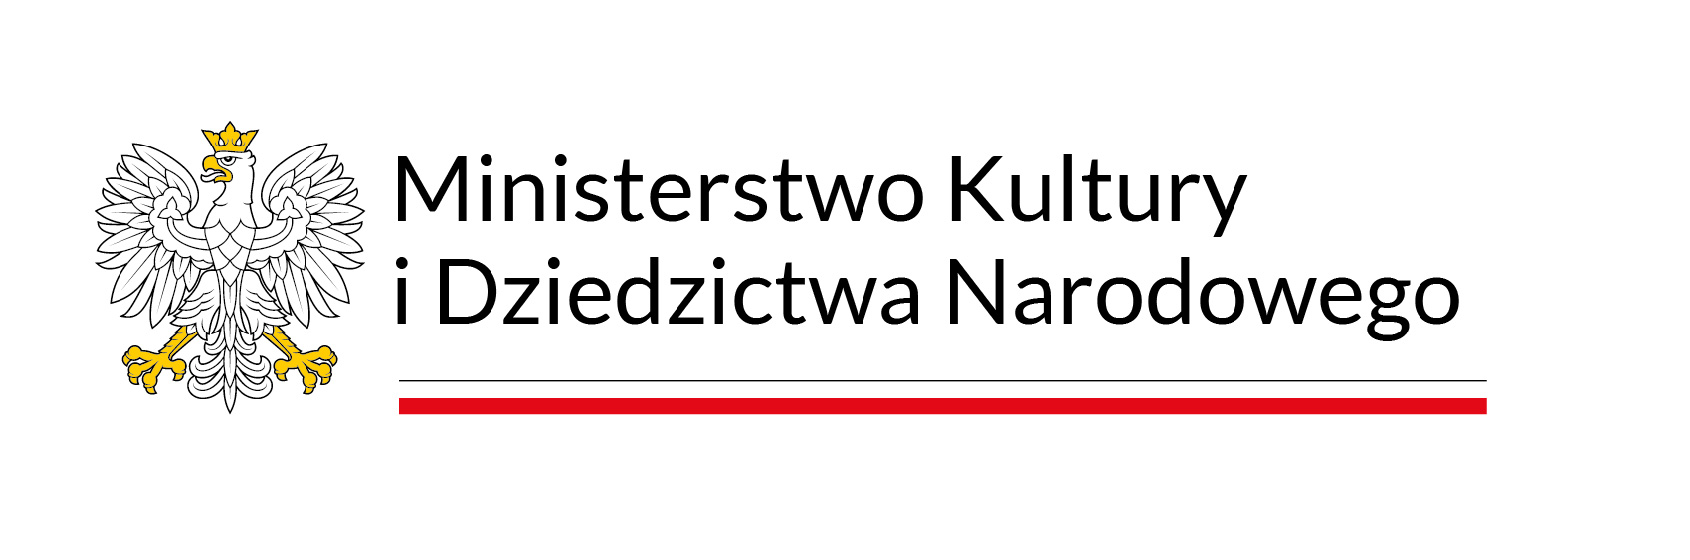 Logo Ministerstwa Kulturi i Dziedzictwa Narodowego